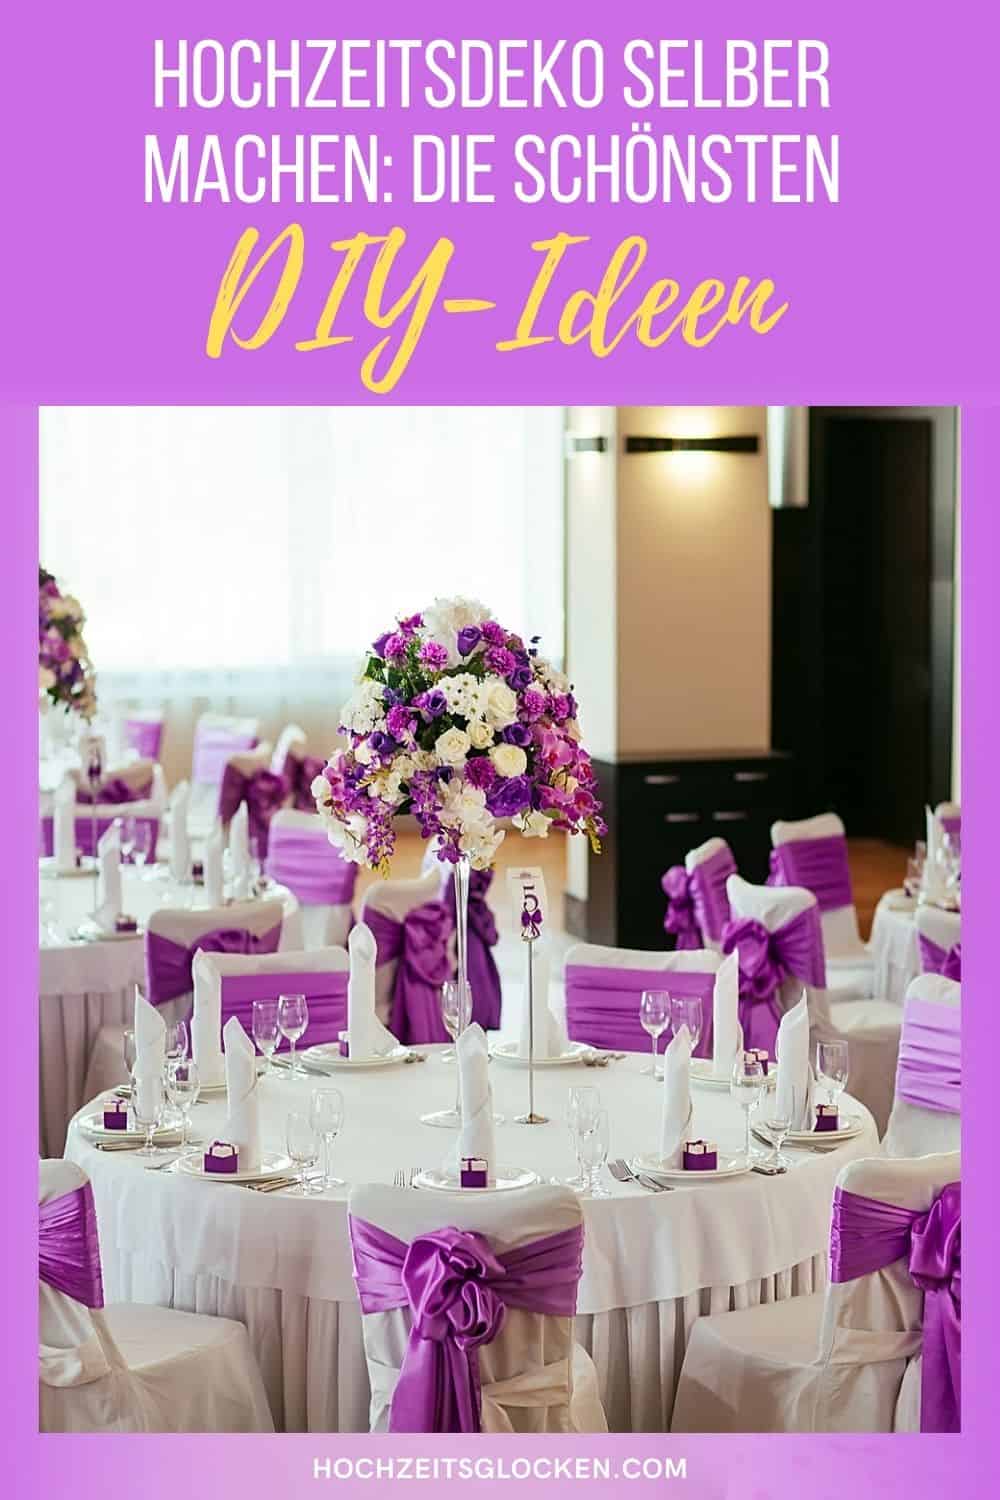 Hochzeitsdeko selber machen: Die schönsten DIY-Ideen